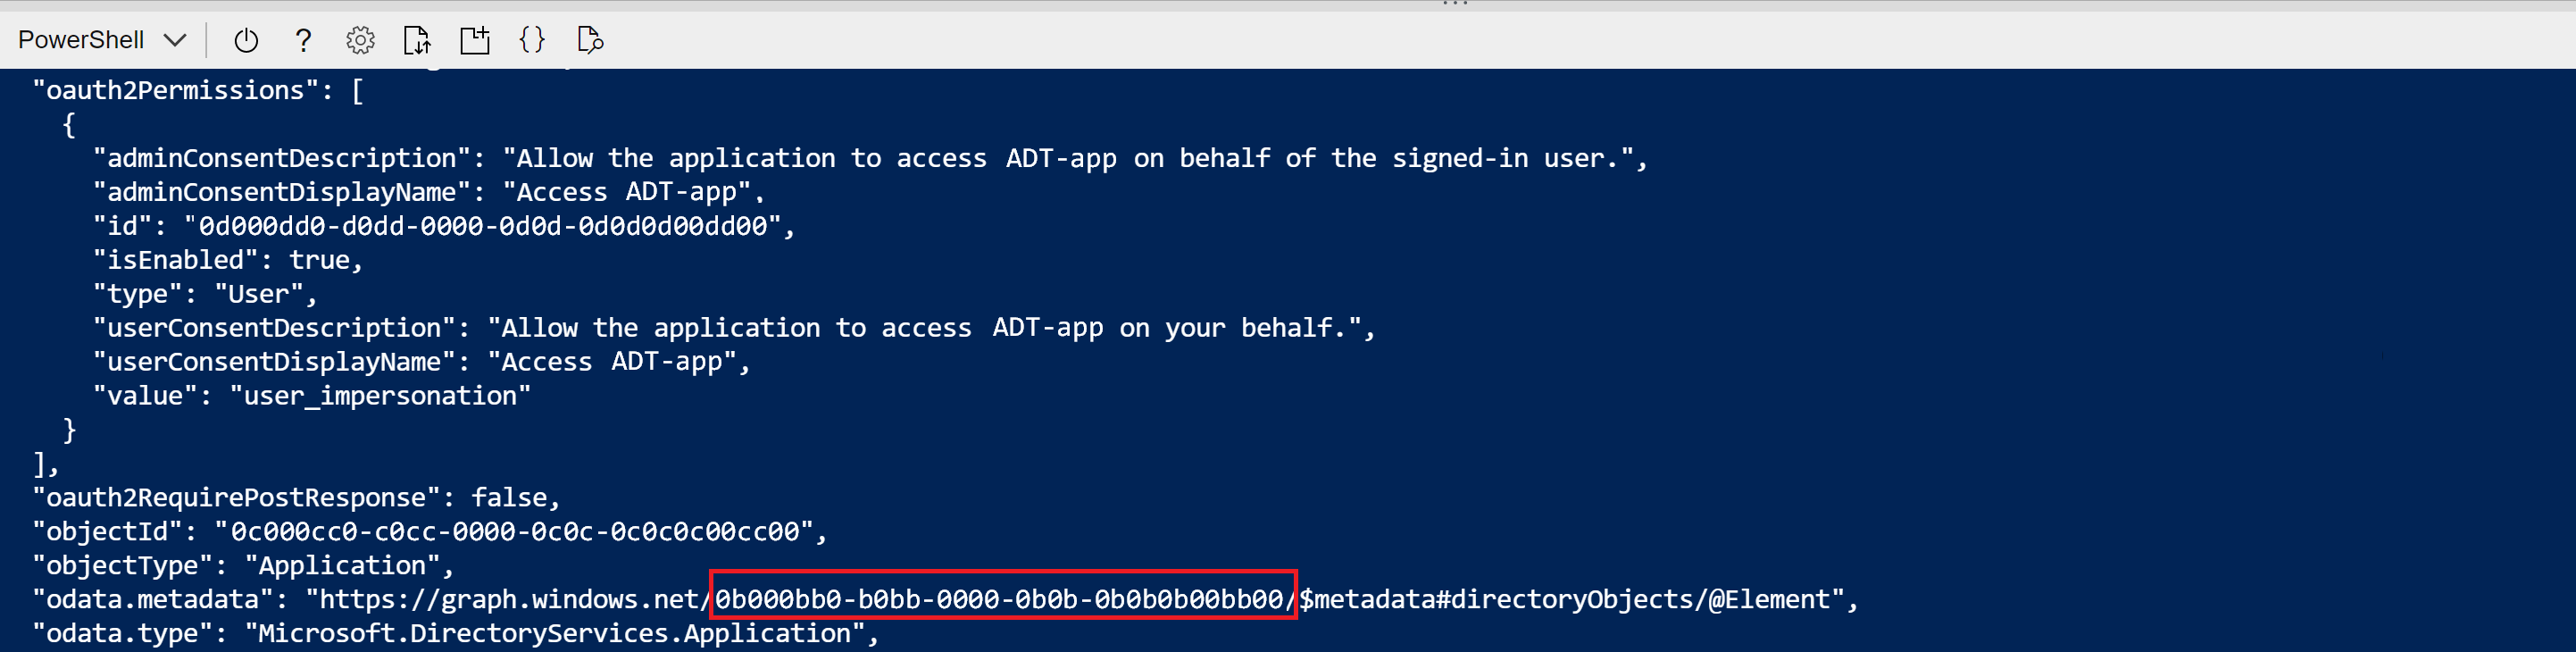 Zrzut ekranu przedstawiający dane wyjściowe usługi Cloud Shell polecenia tworzenia rejestracji aplikacji. Wartość identyfikatora GUID w pliku odata.metadata jest wyróżniona.